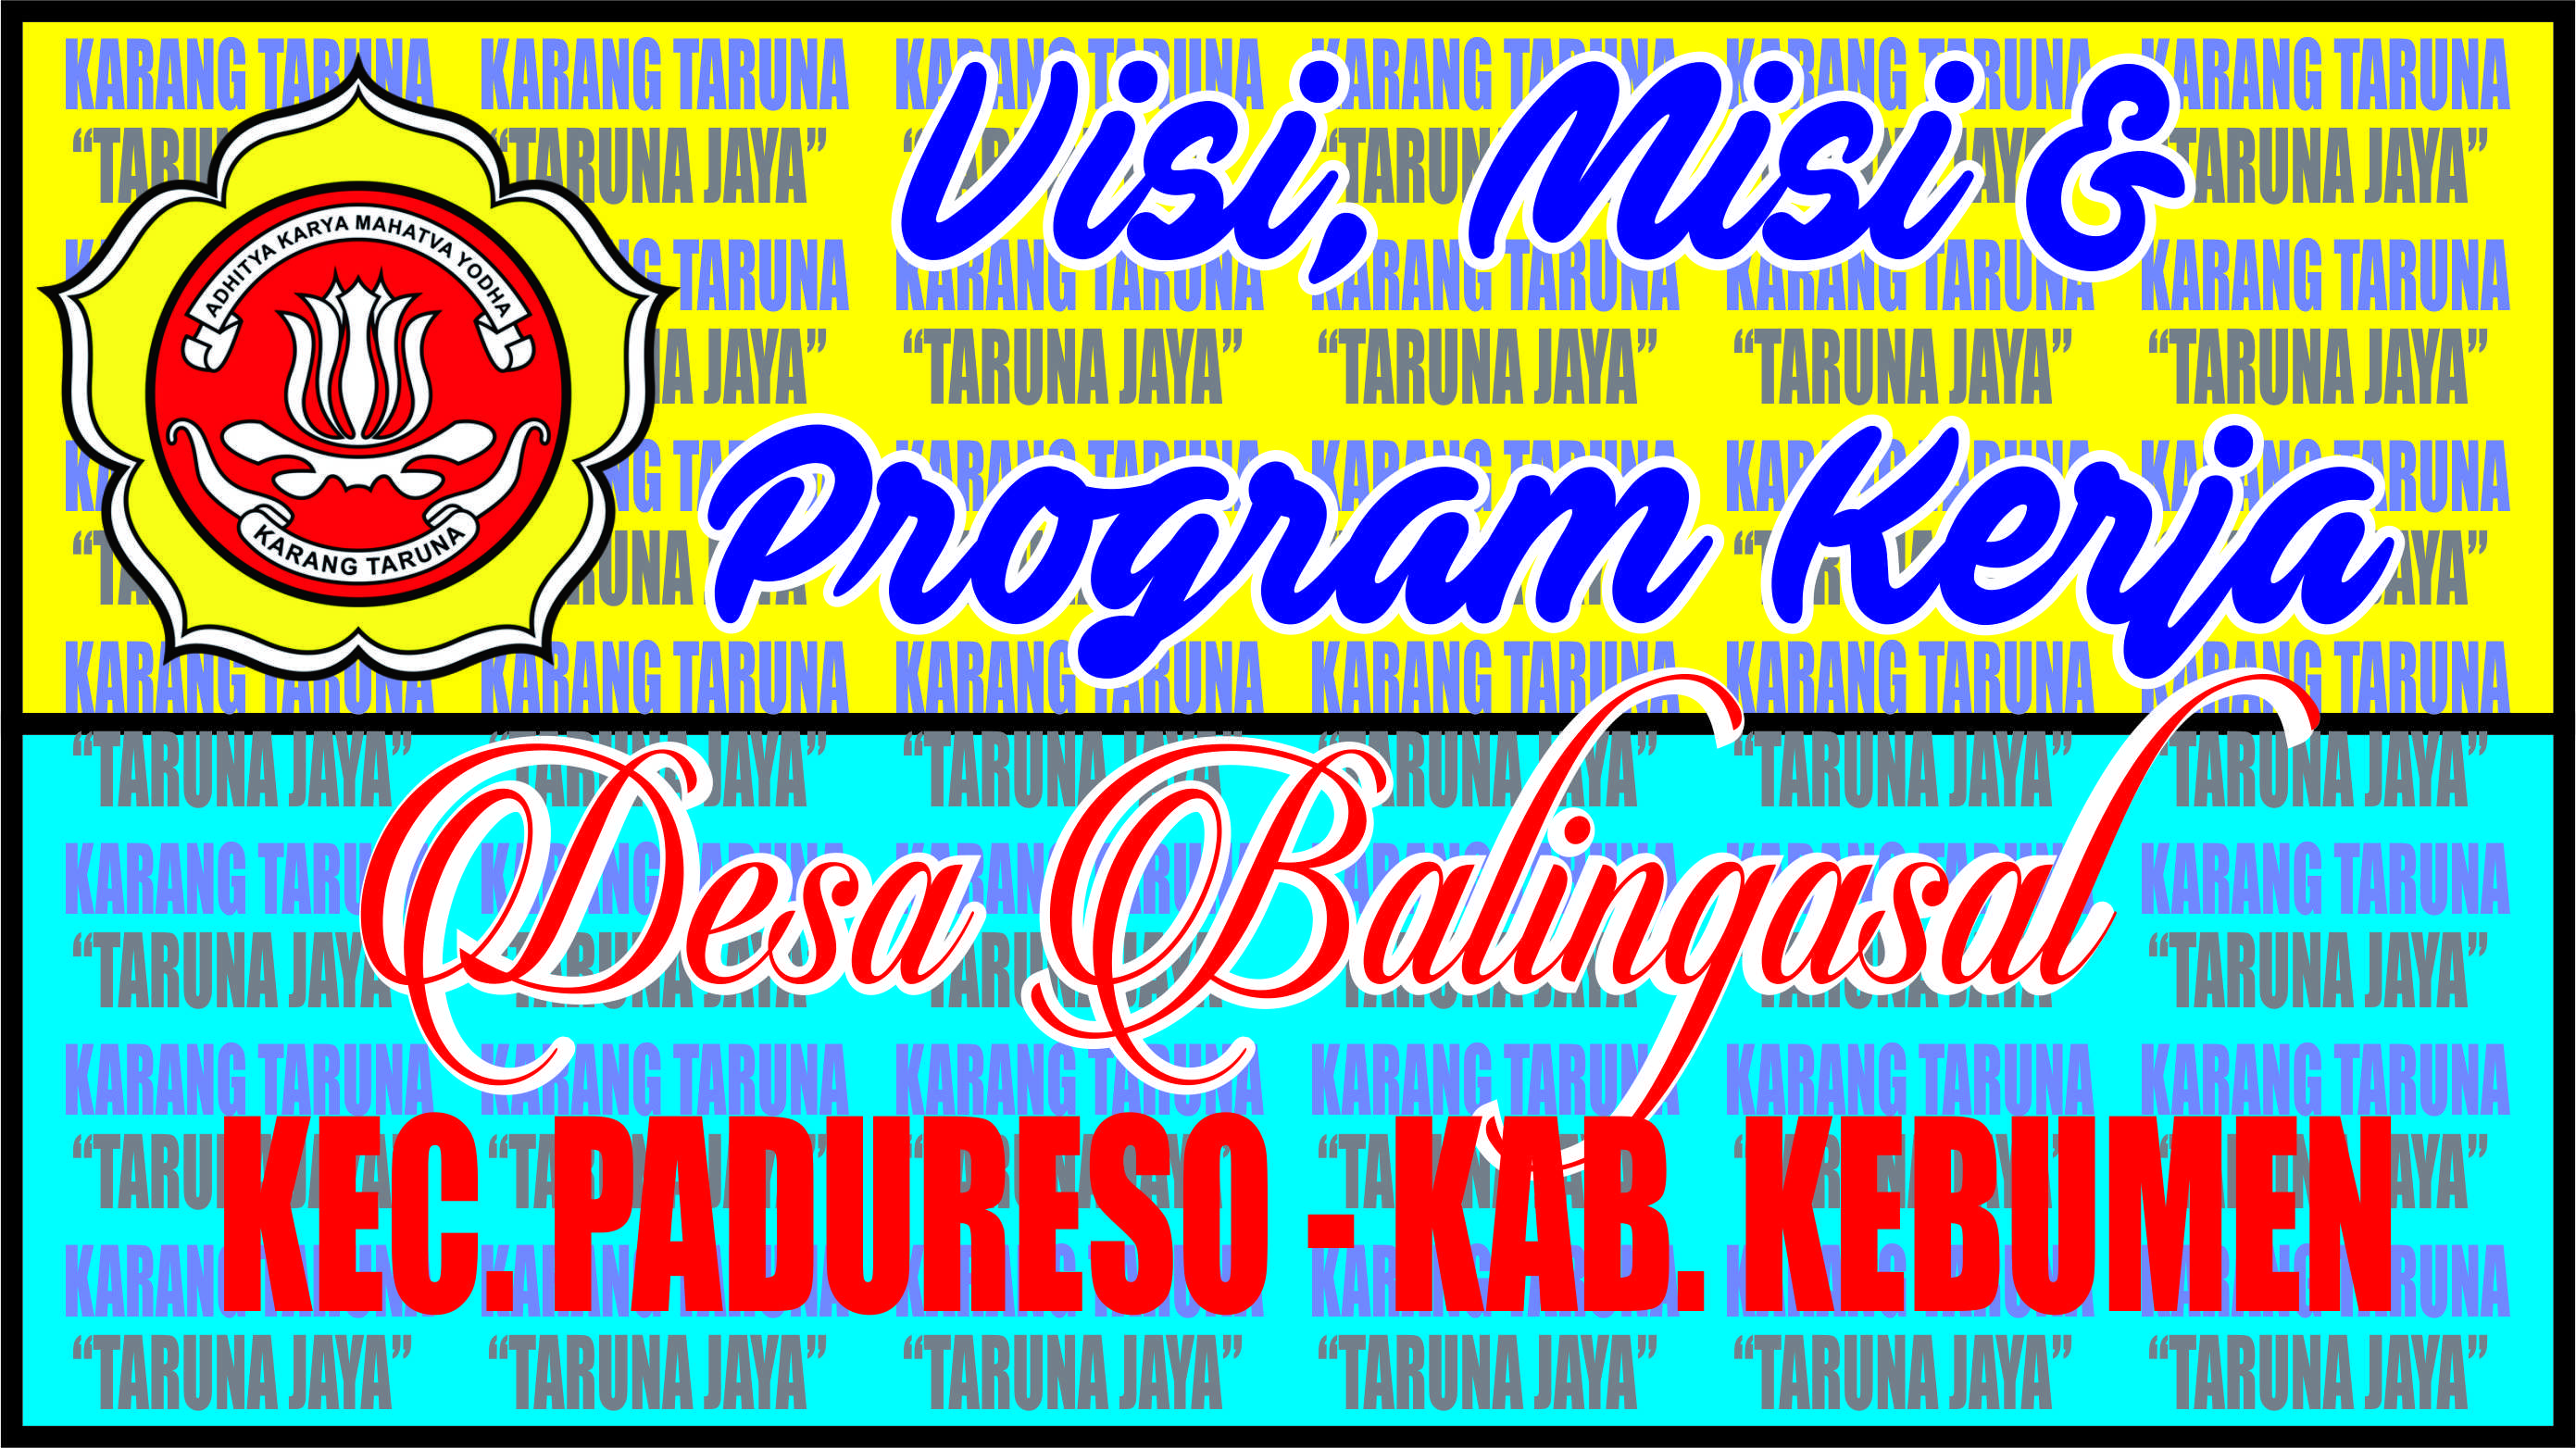 Visi Misi Dan Program Kerja Karang Taruna Website Resmi Desa Balingasal Kecamatan Padureso Kabupaten Kebumen